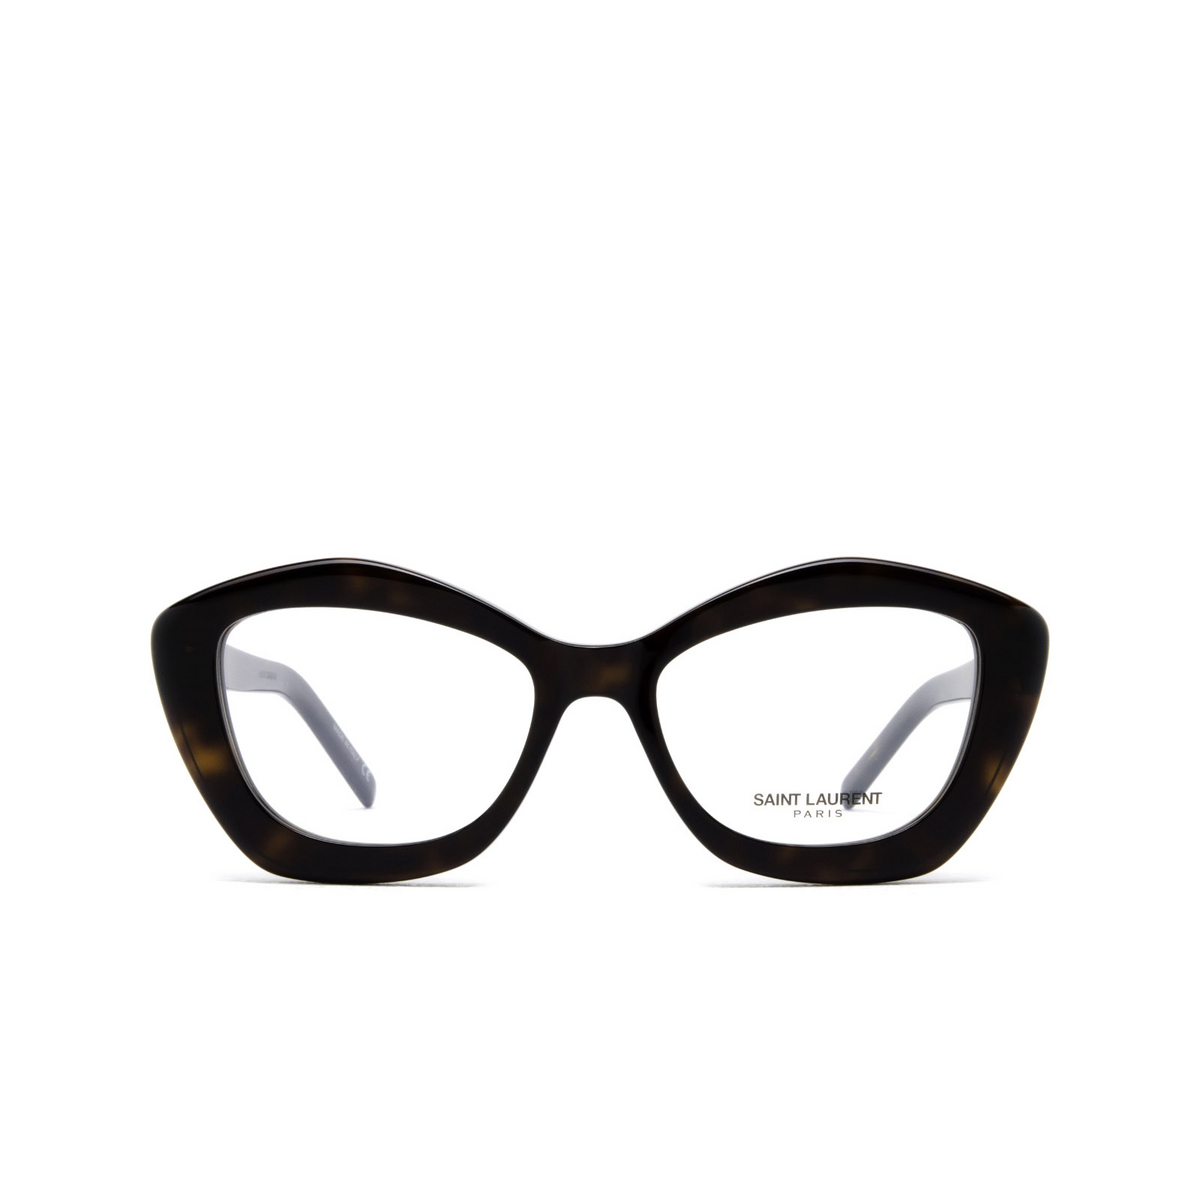 Saint Laurent® Irregular Eyeglasses: SL 68 OPT color 002 Havana - front view